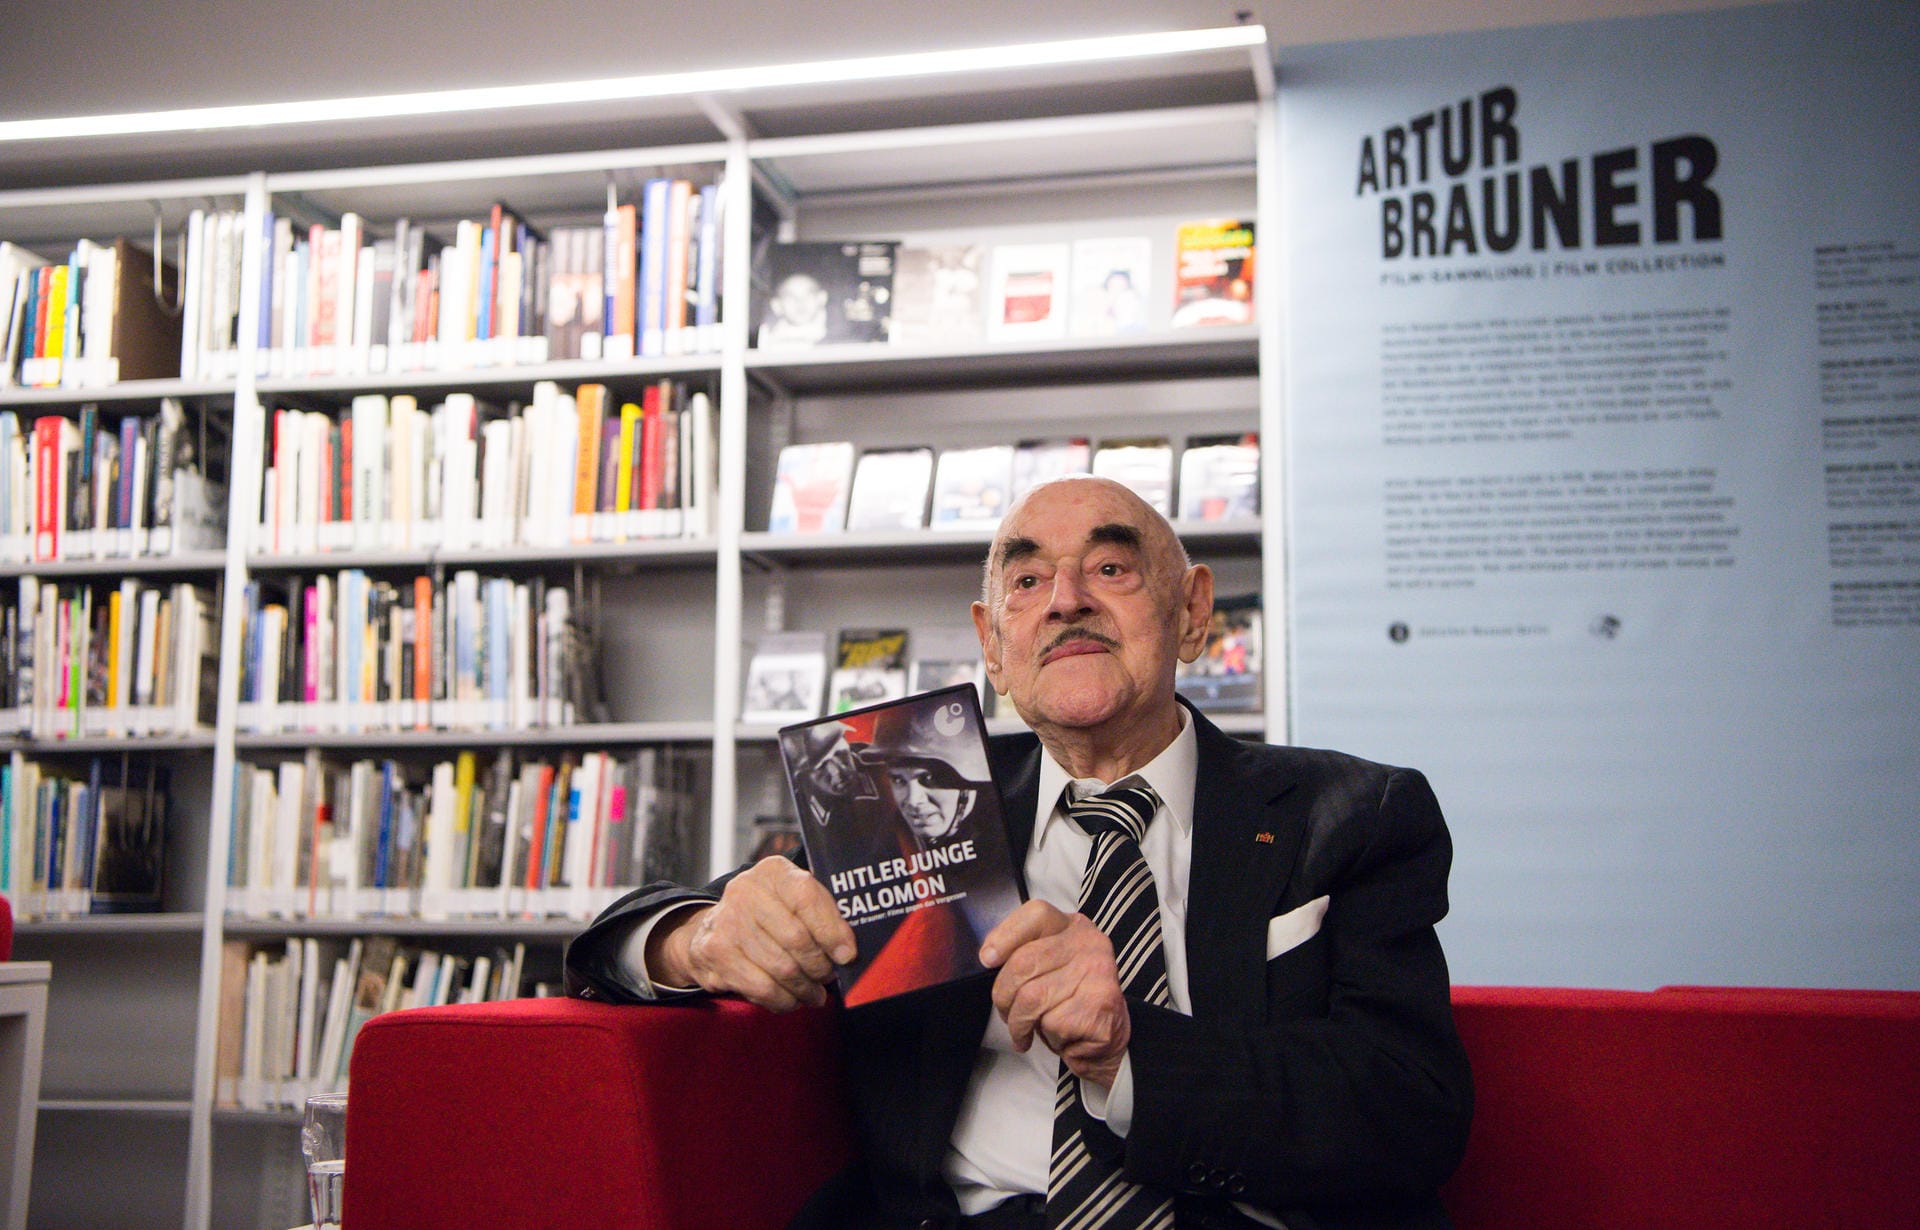 März 2016: Der Filmproduzent sitzt im Jüdischen Museum in Berlin. Diesem hat Brauner aus seinem umfangreichen Werk eine Filmsammlung aus 21 Filmen zu den Themen Holocaust und Nationalsozialismus gespendet.